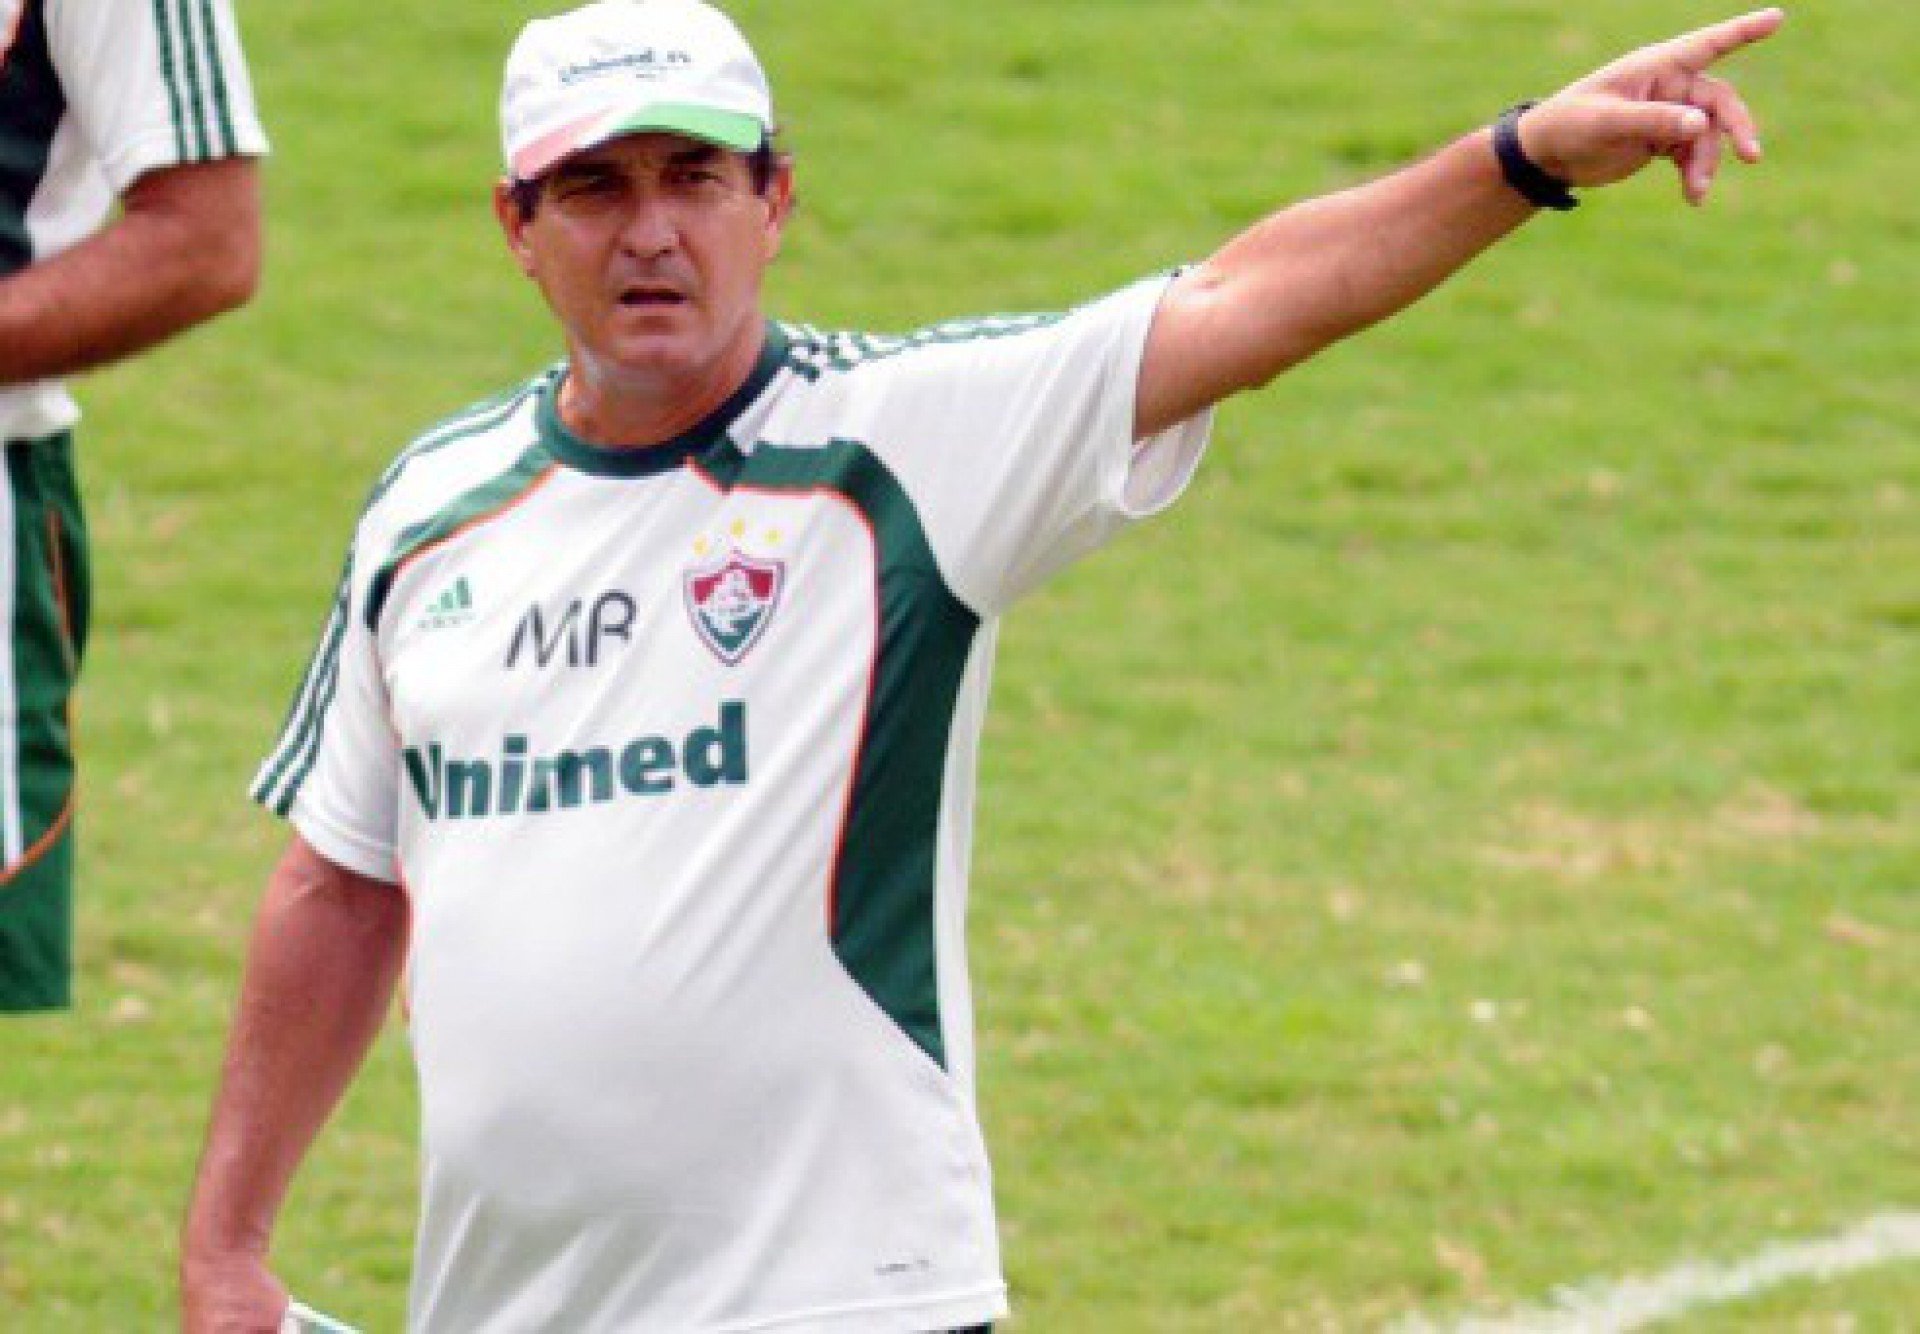 Muricy Ramalho comandou o Fluminense em 2010 - Divulgação